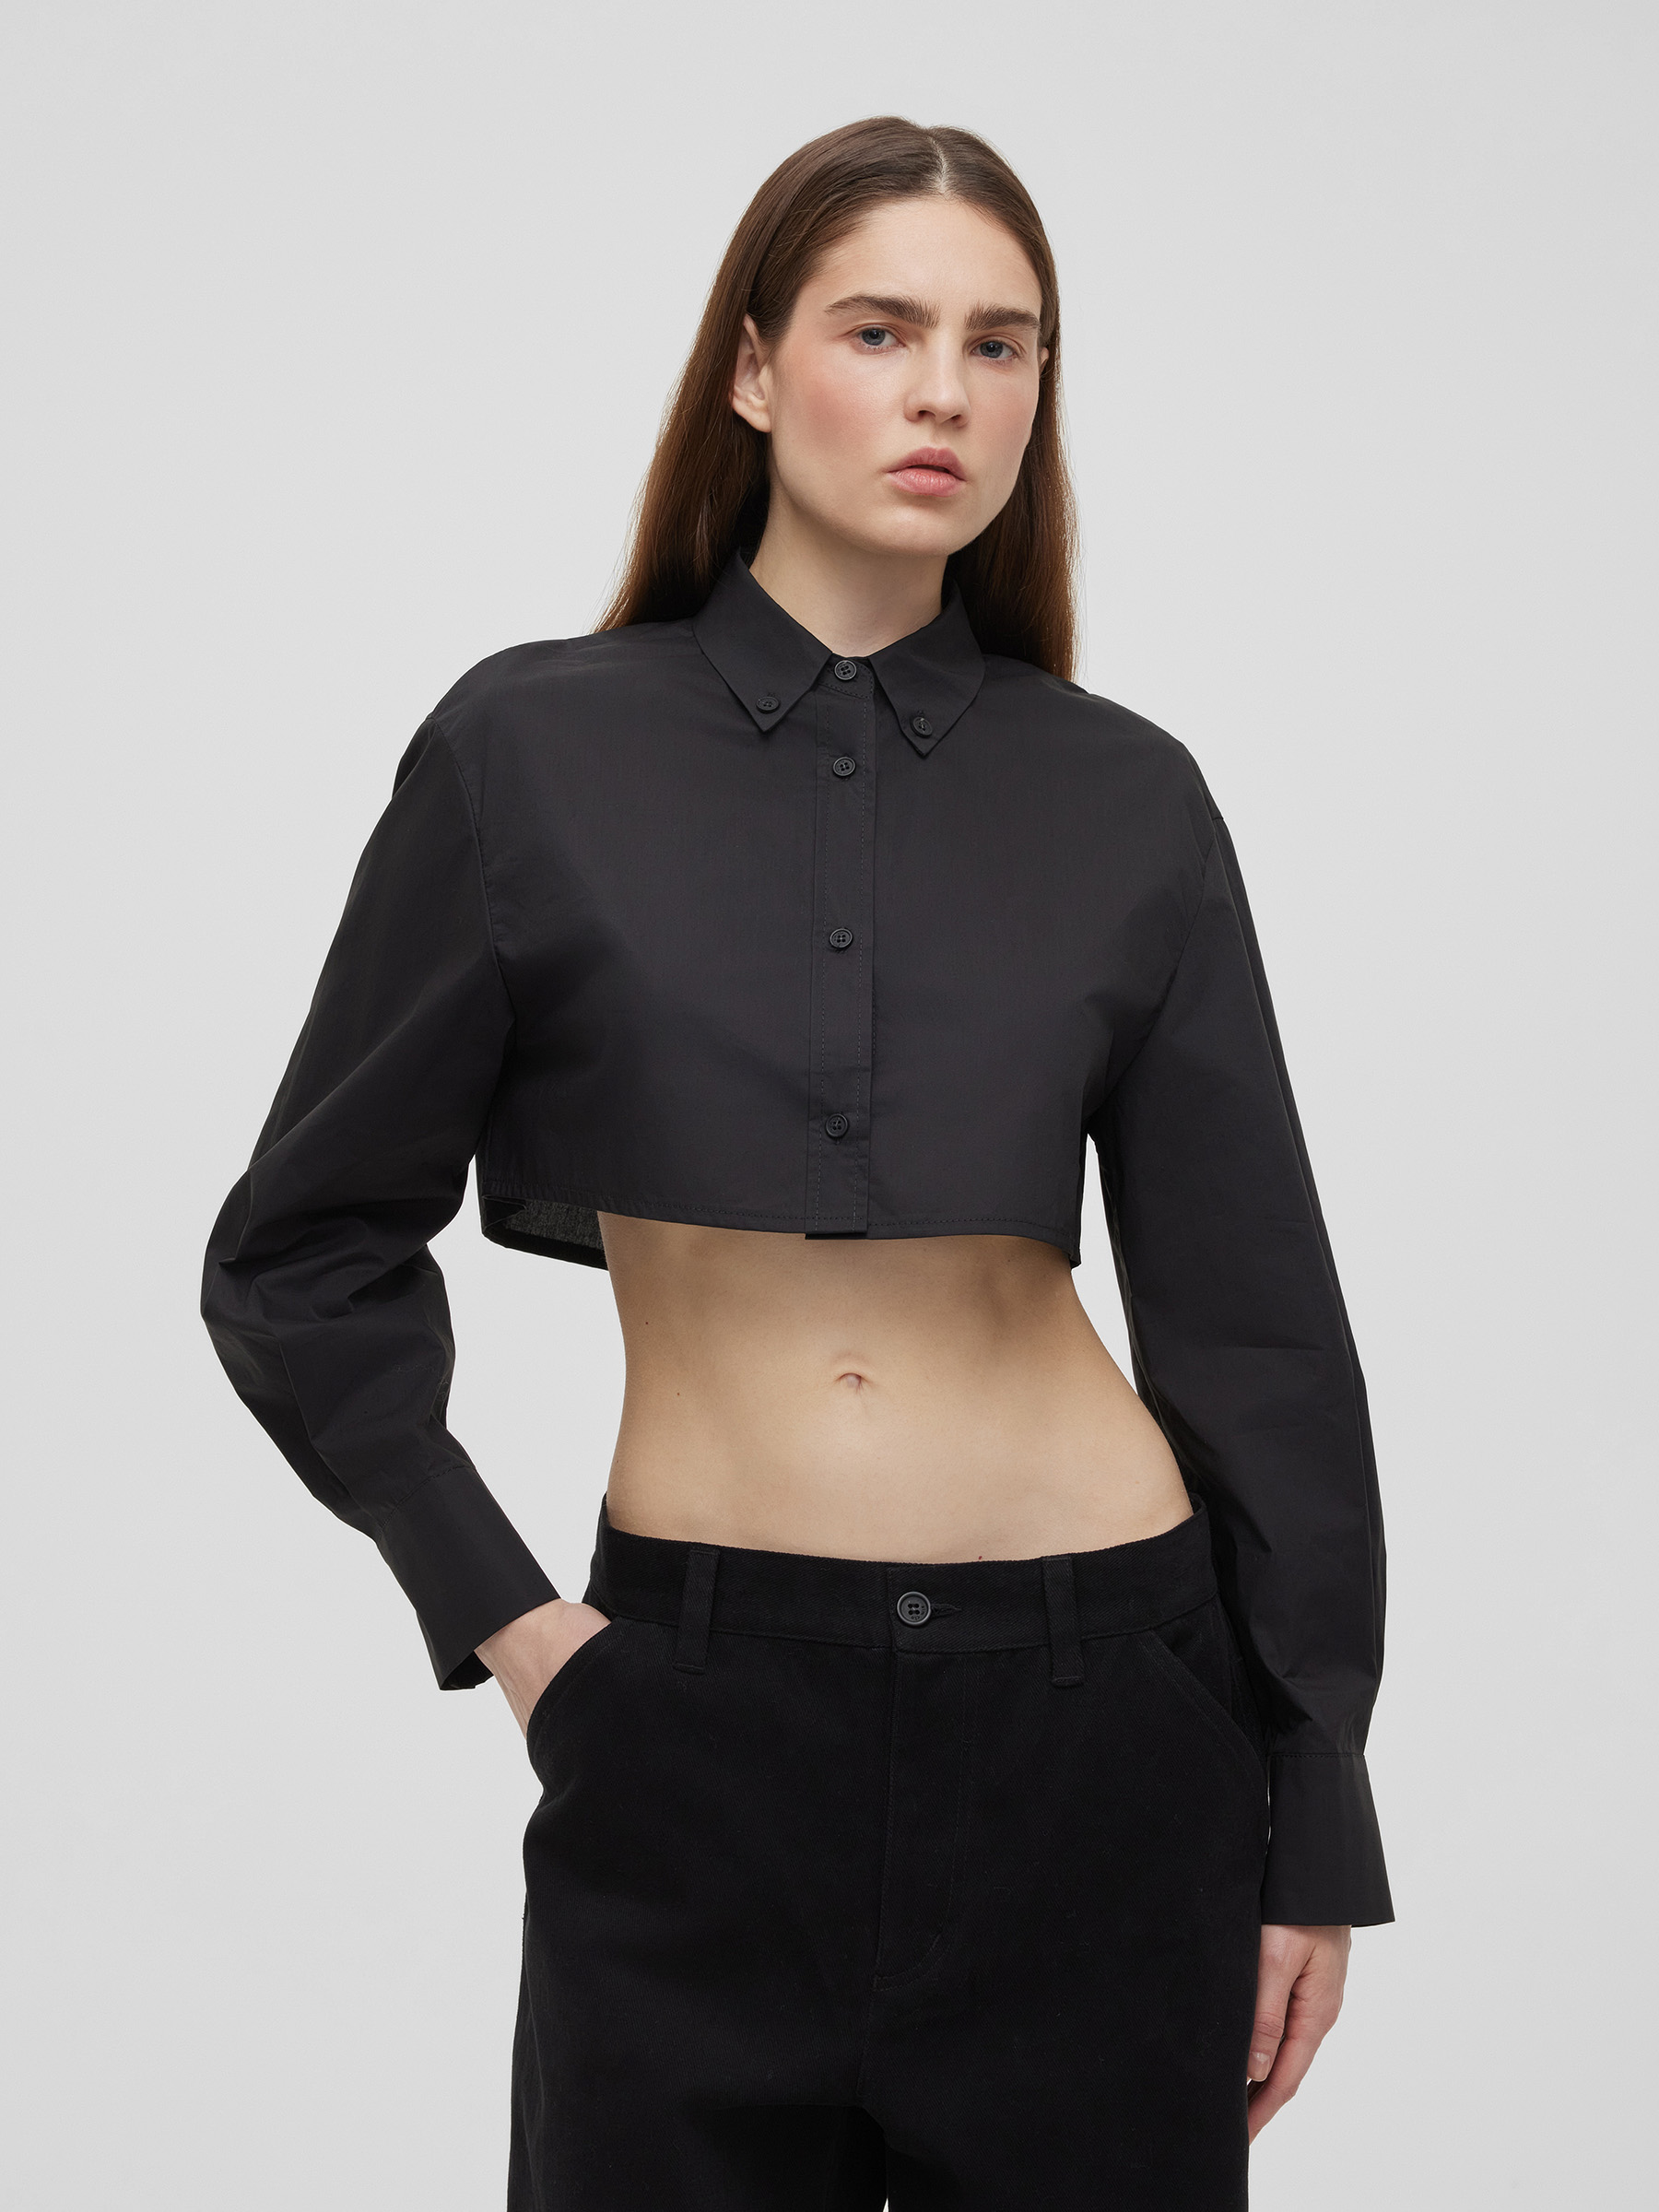 Рубашка женская короткая из хлопка, цвет – черный фото